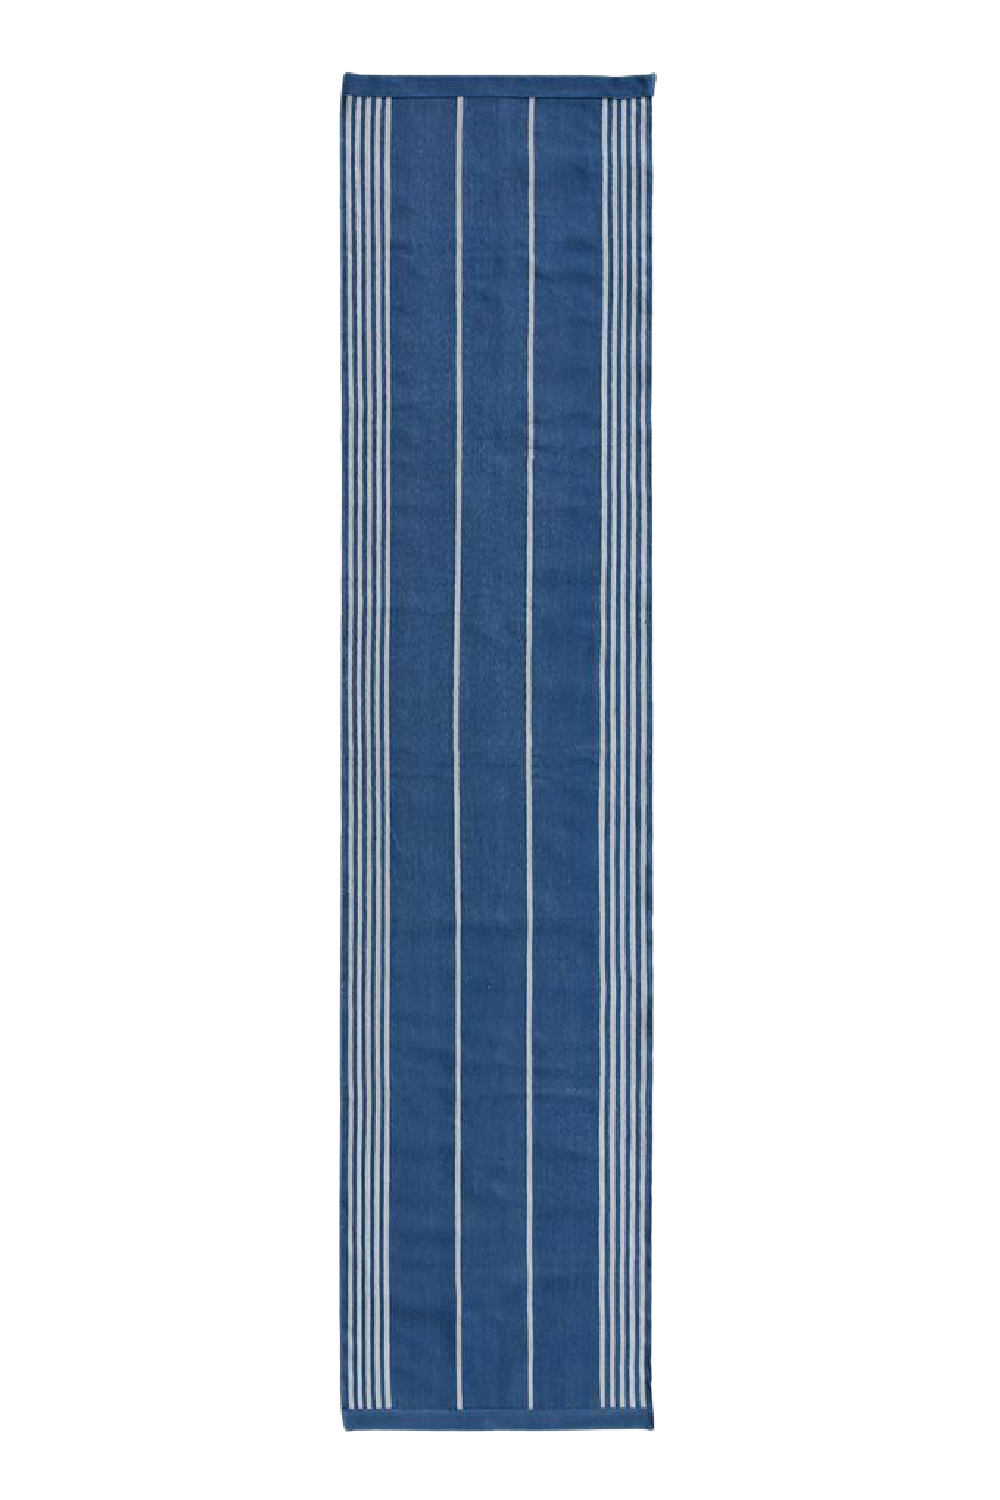 Stripes Contemporary Area Rug 2' x 10' | Andrew Martin Espalier | Oroa.com